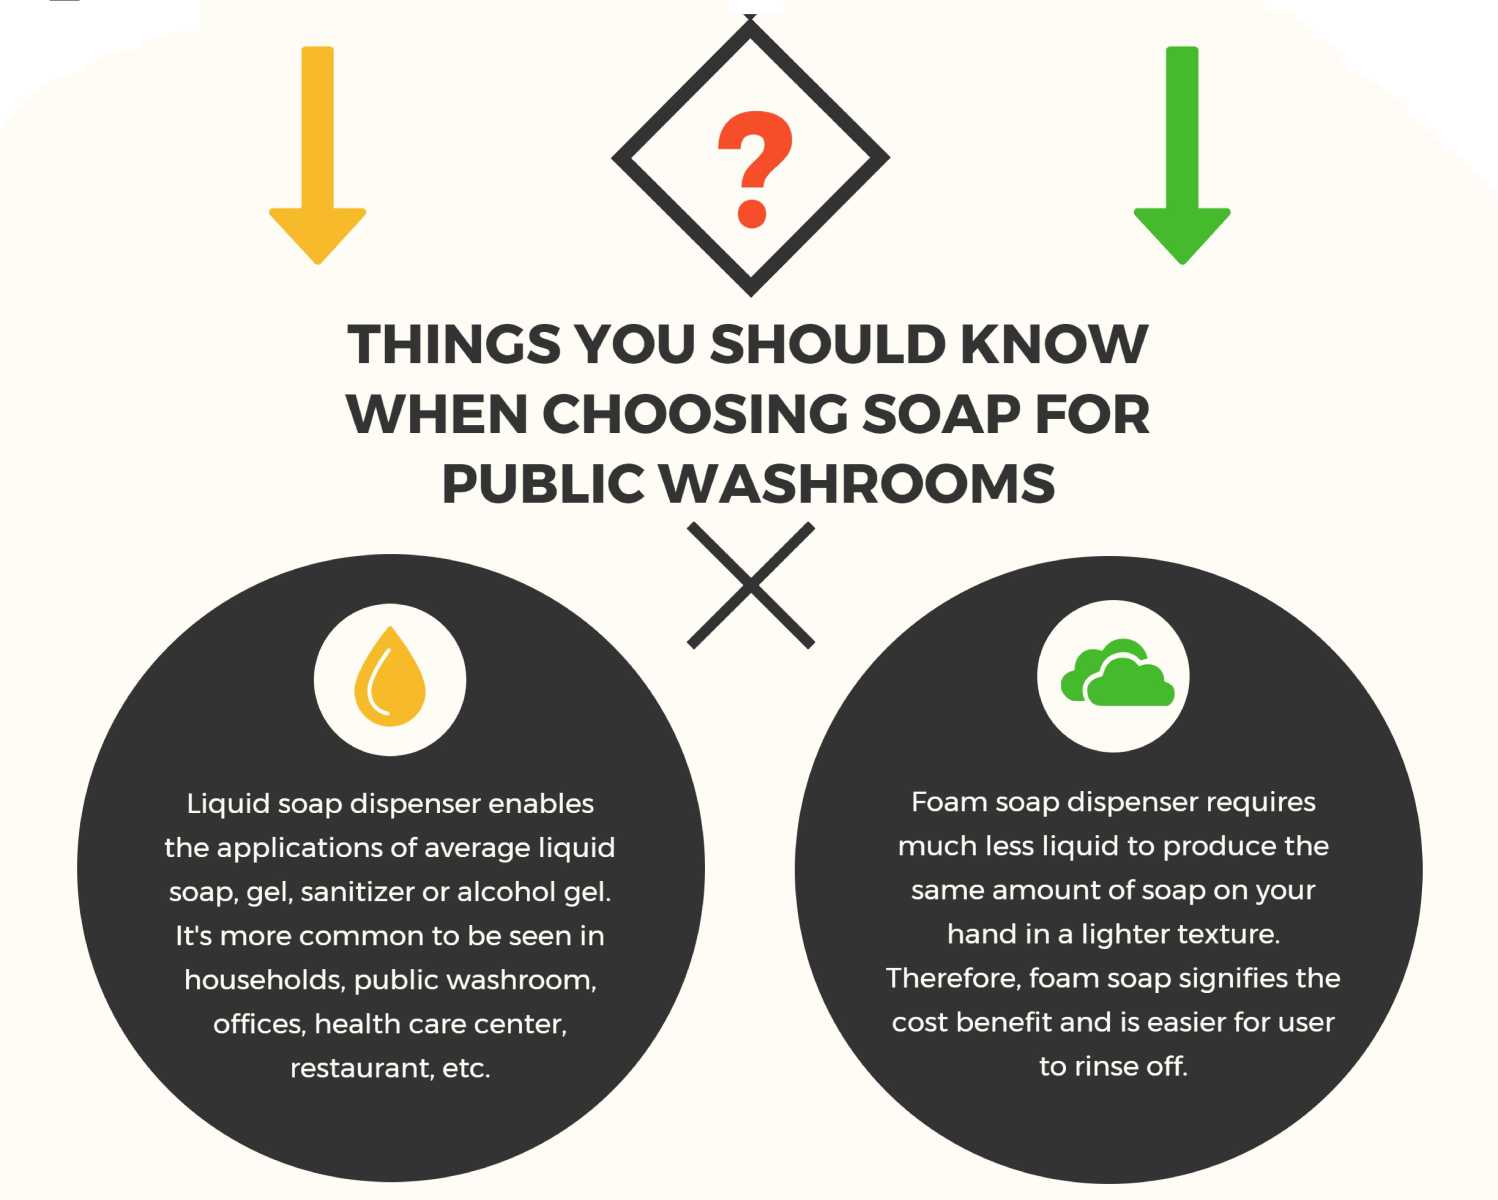 Voyons quelques avantages et inconvénients du savon liquide et du savon mousse.